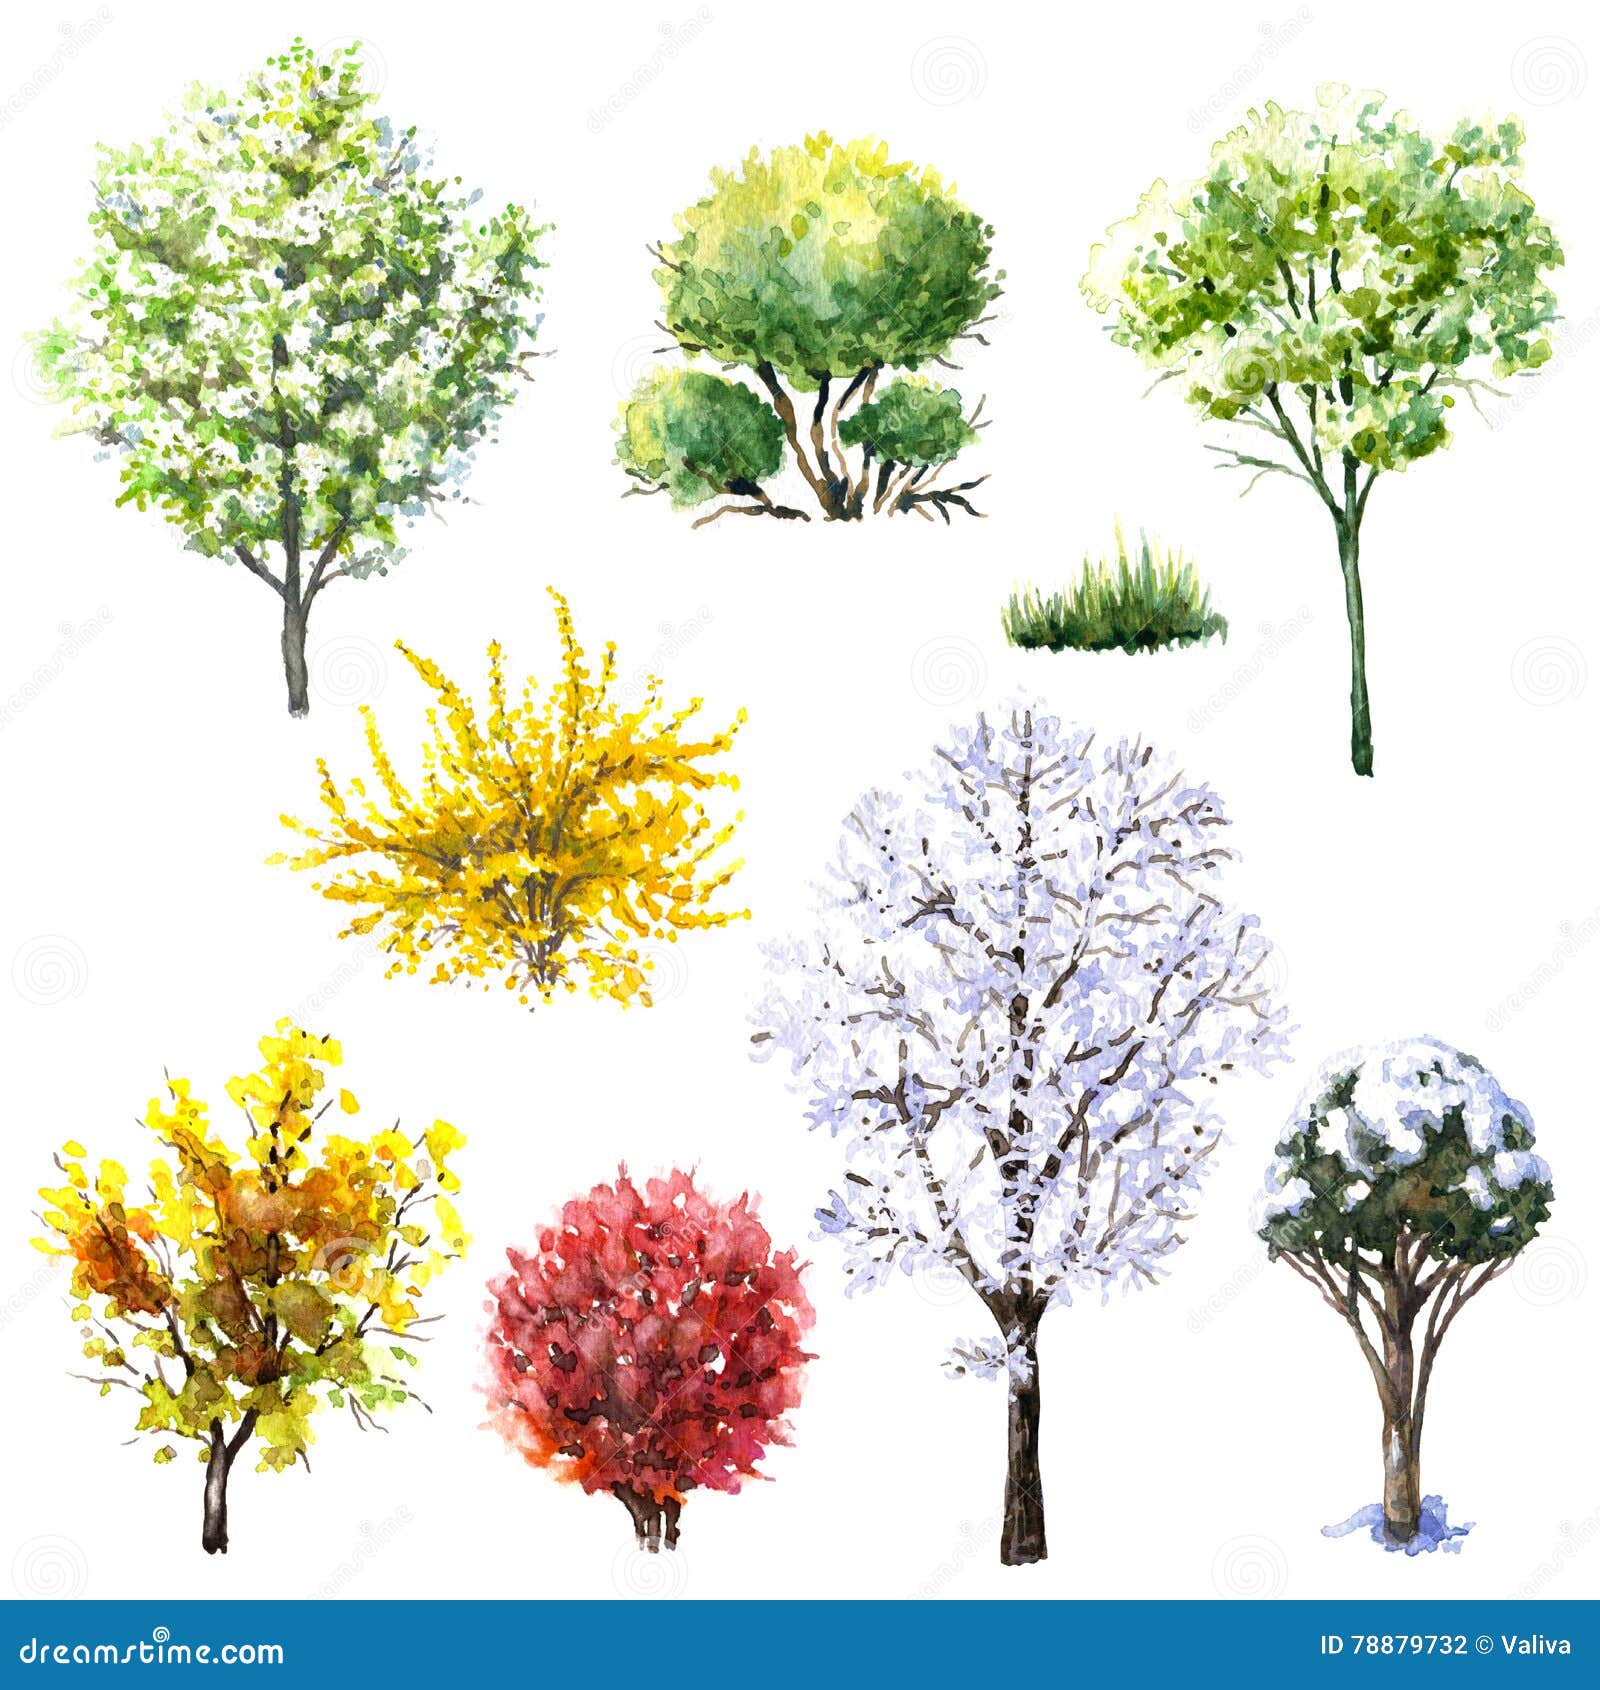 Группа лиственных деревьев и кустарников